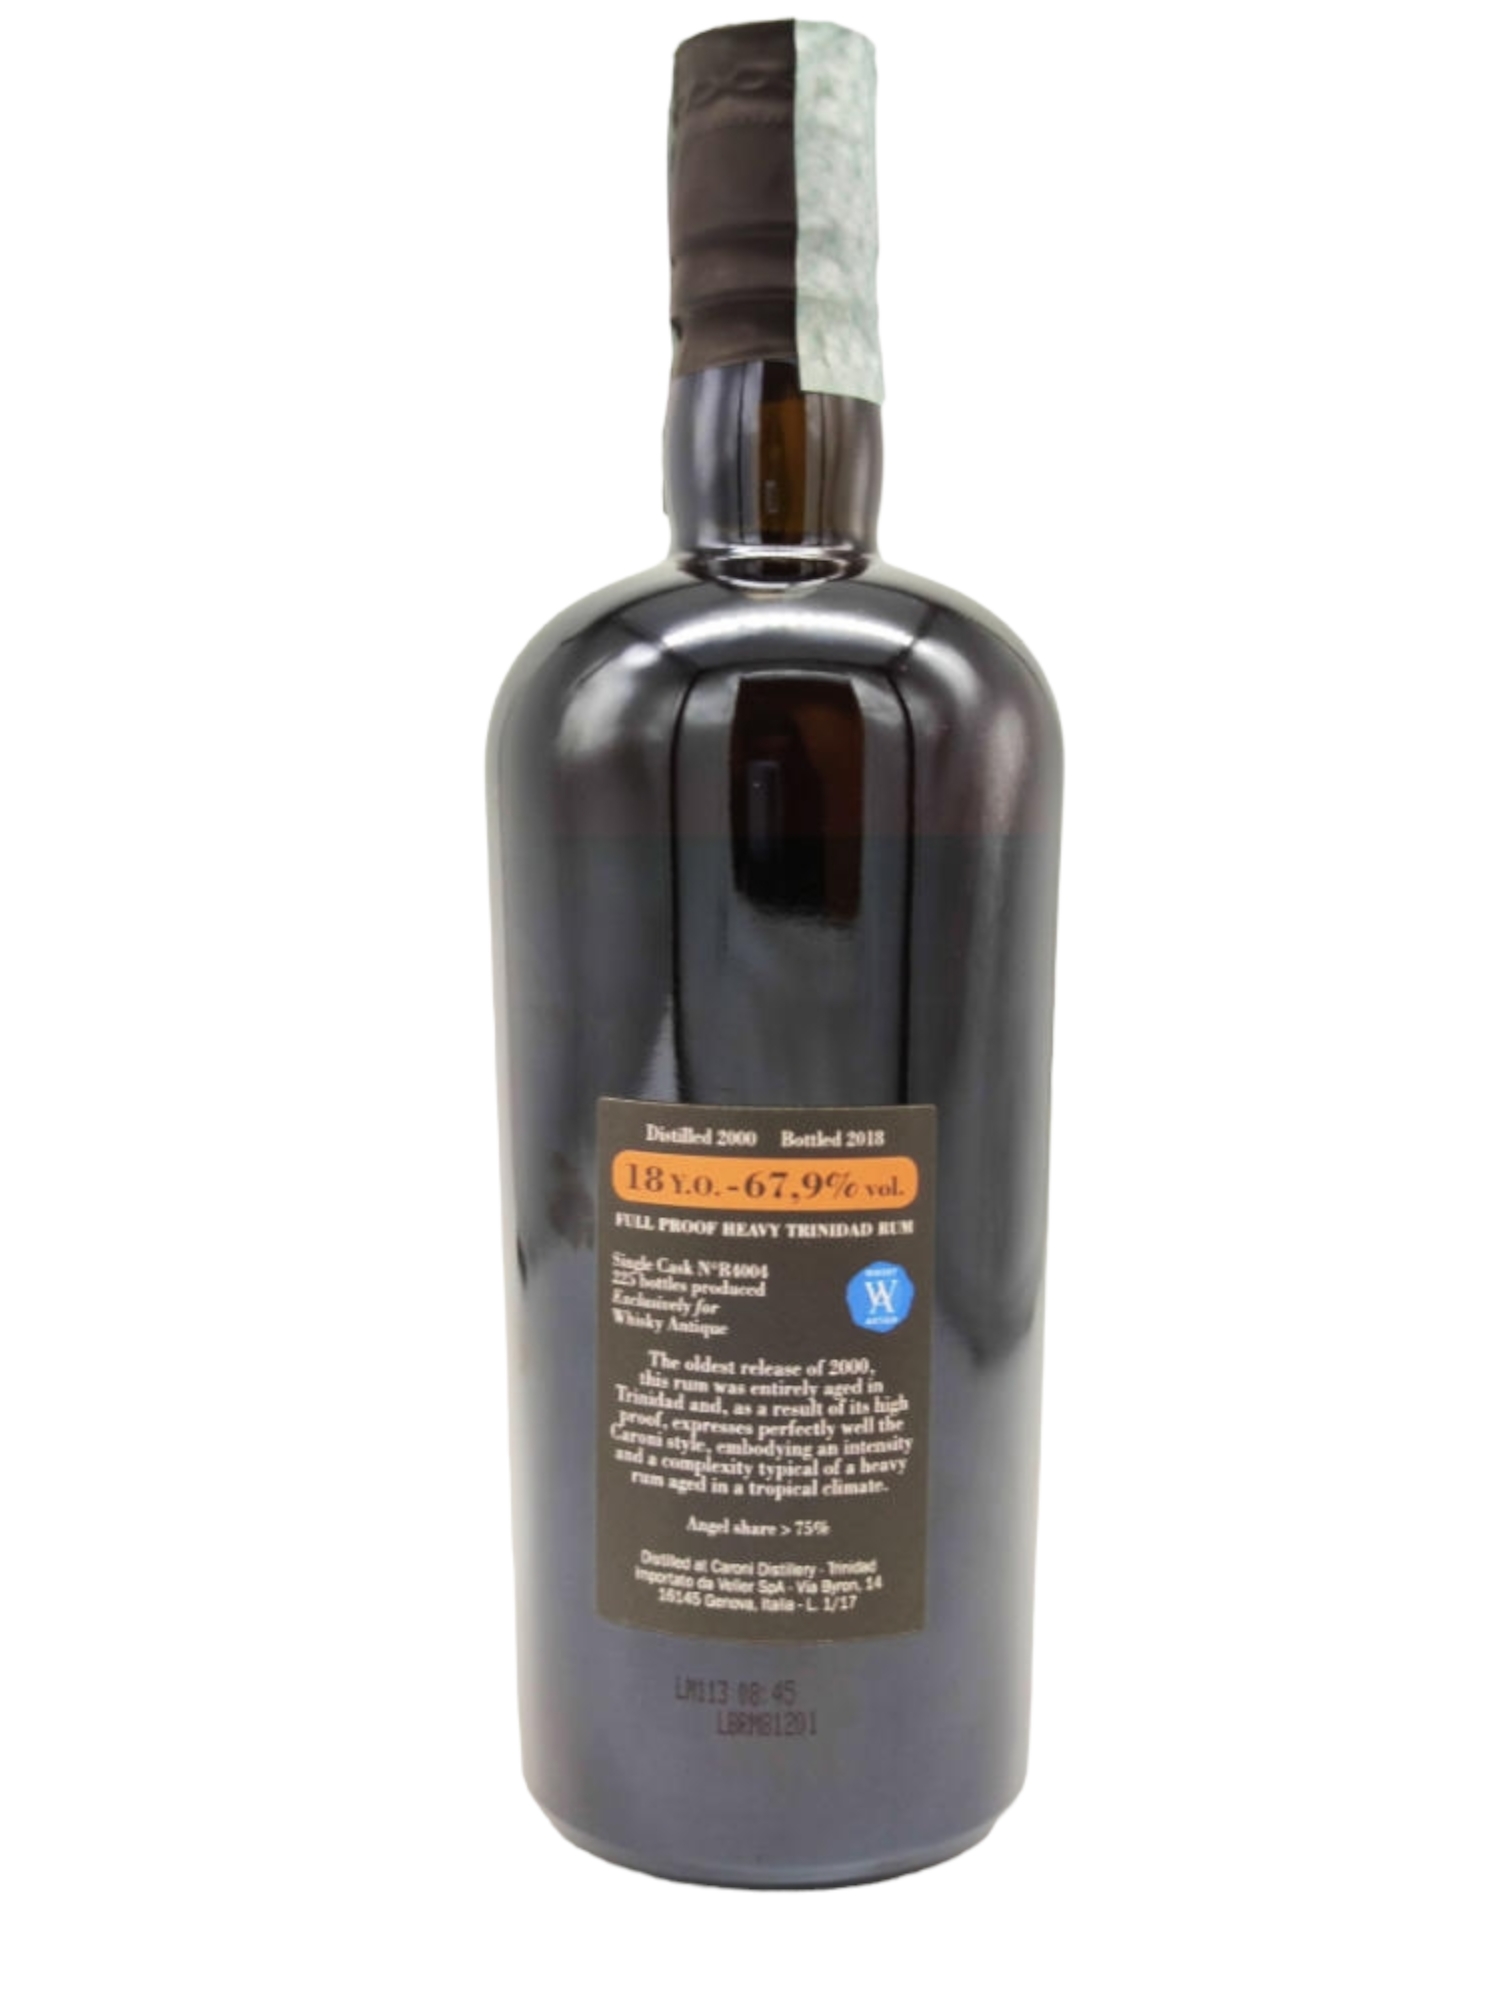 Caroni 2000 18yo 67,9% cask#R4004 Whisky Antique